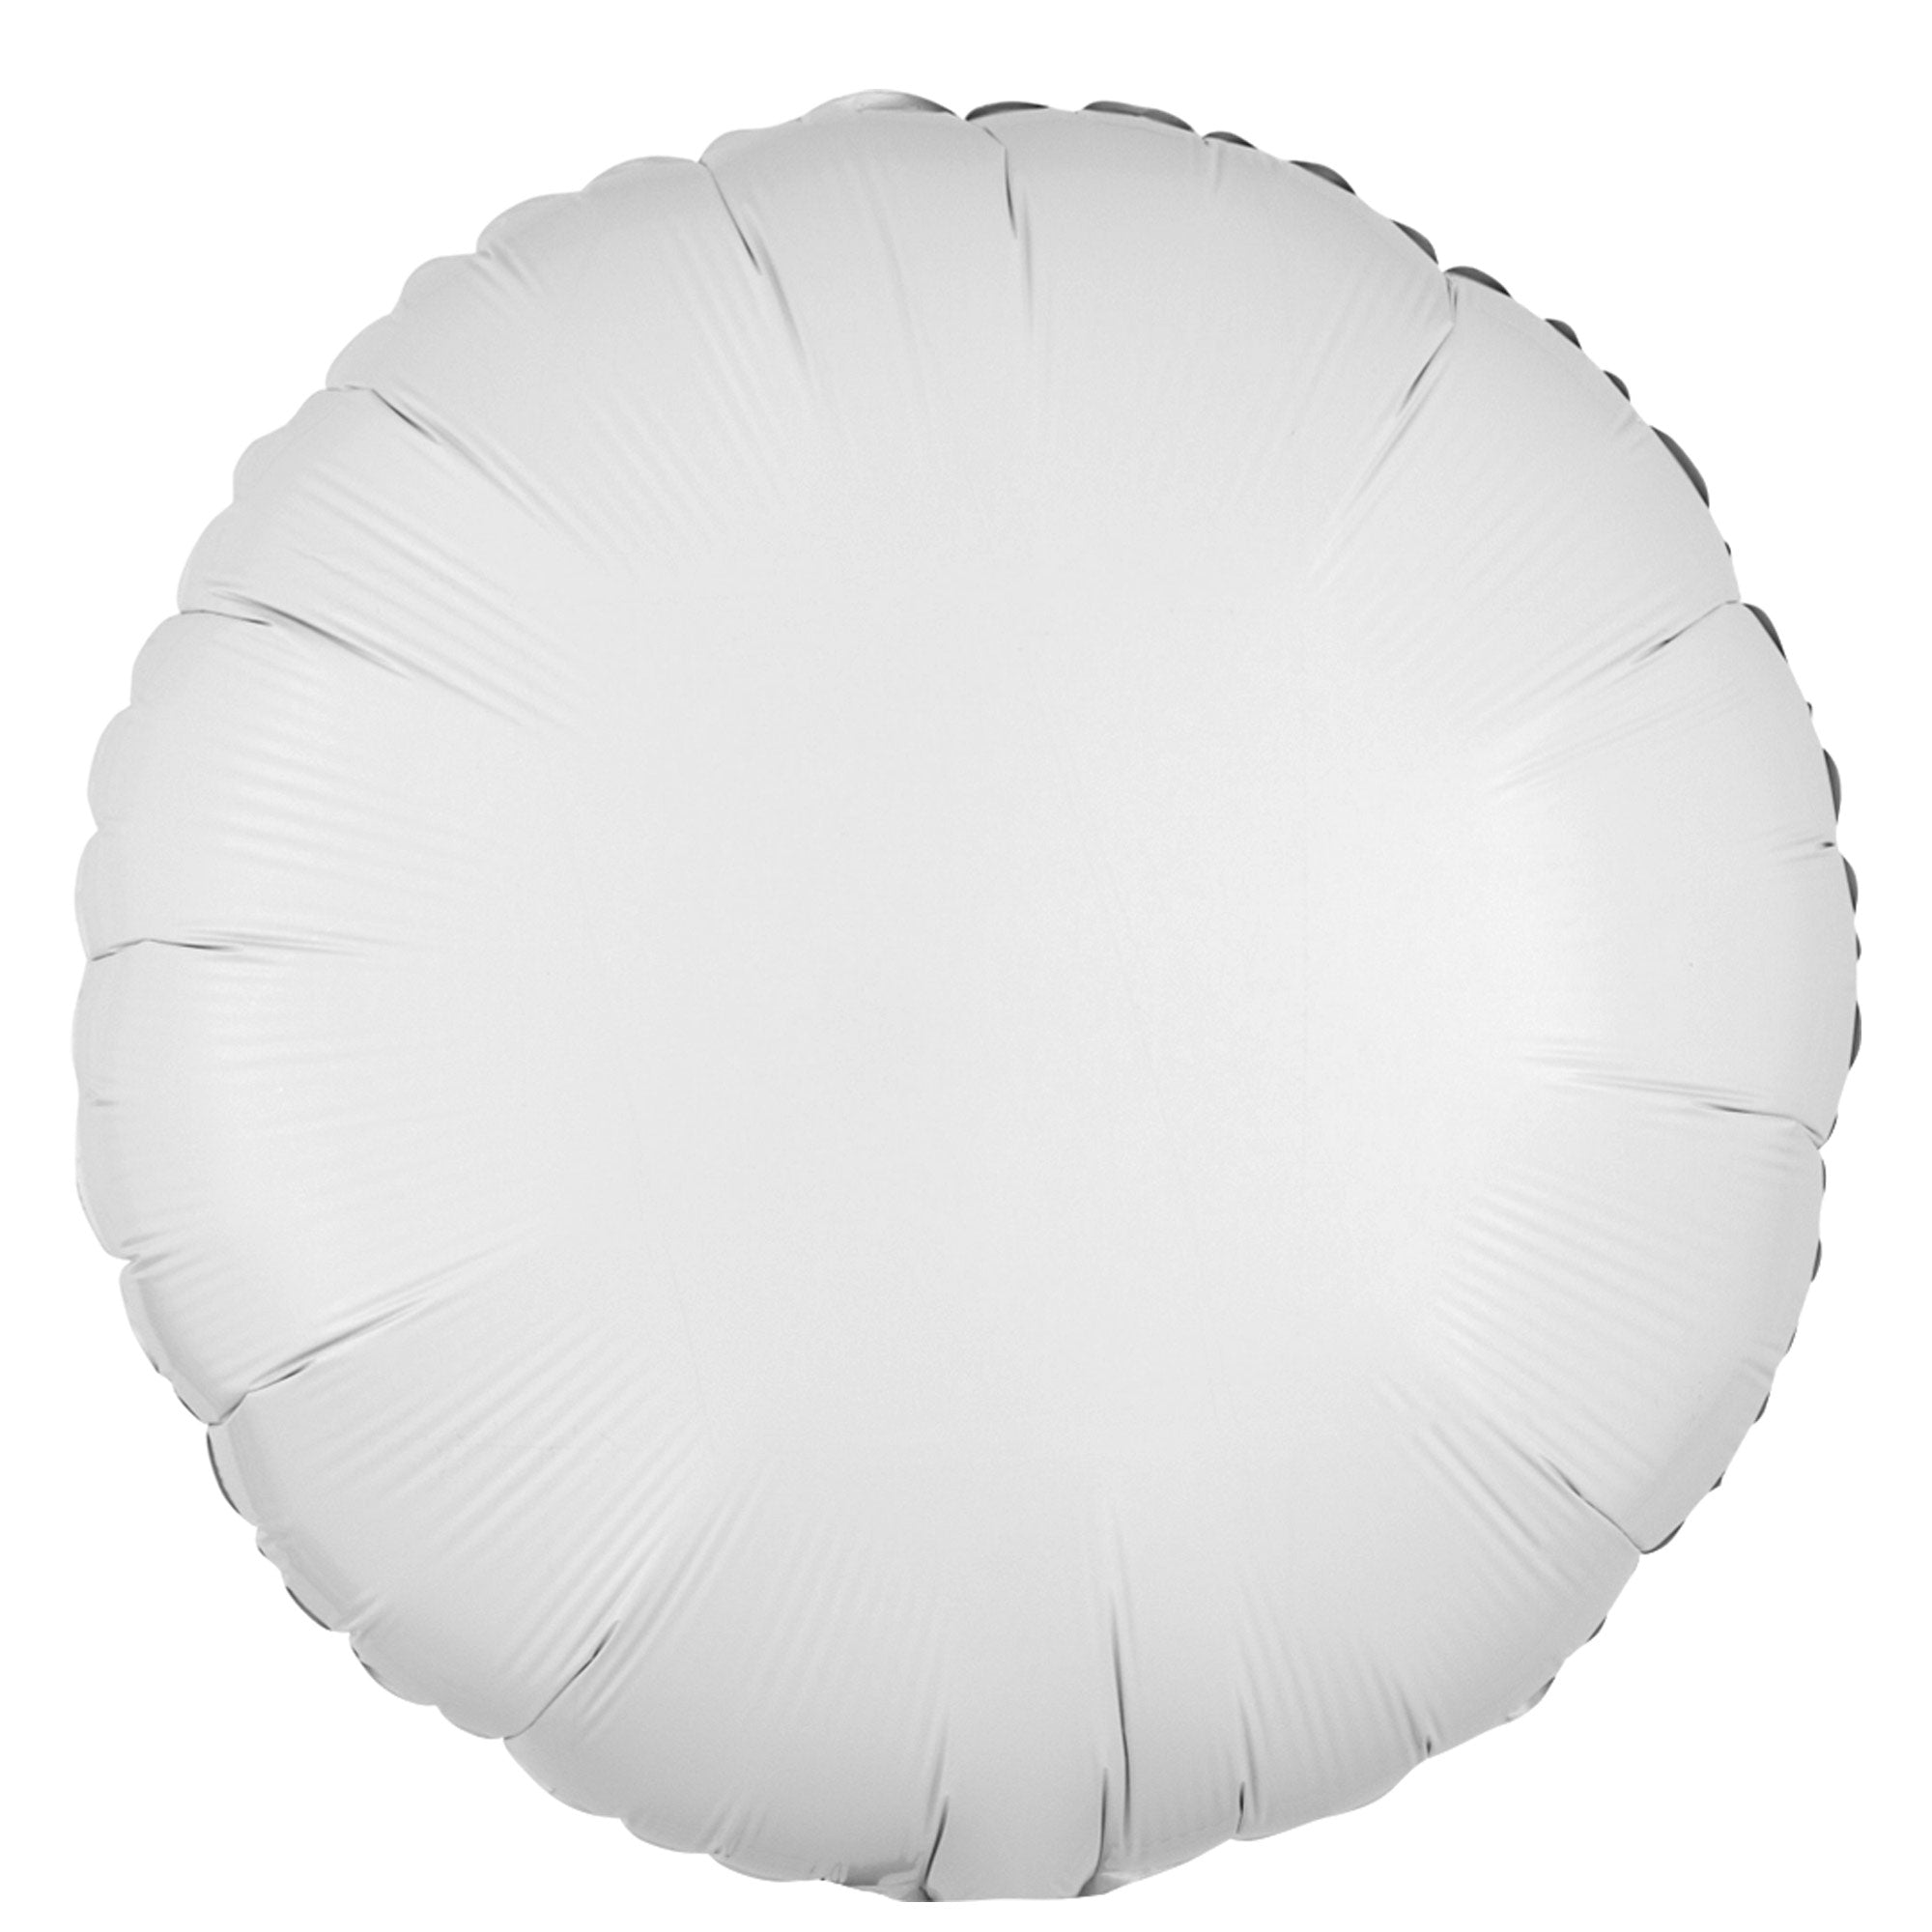 Opaque Metallic White Foil Balloon 18in